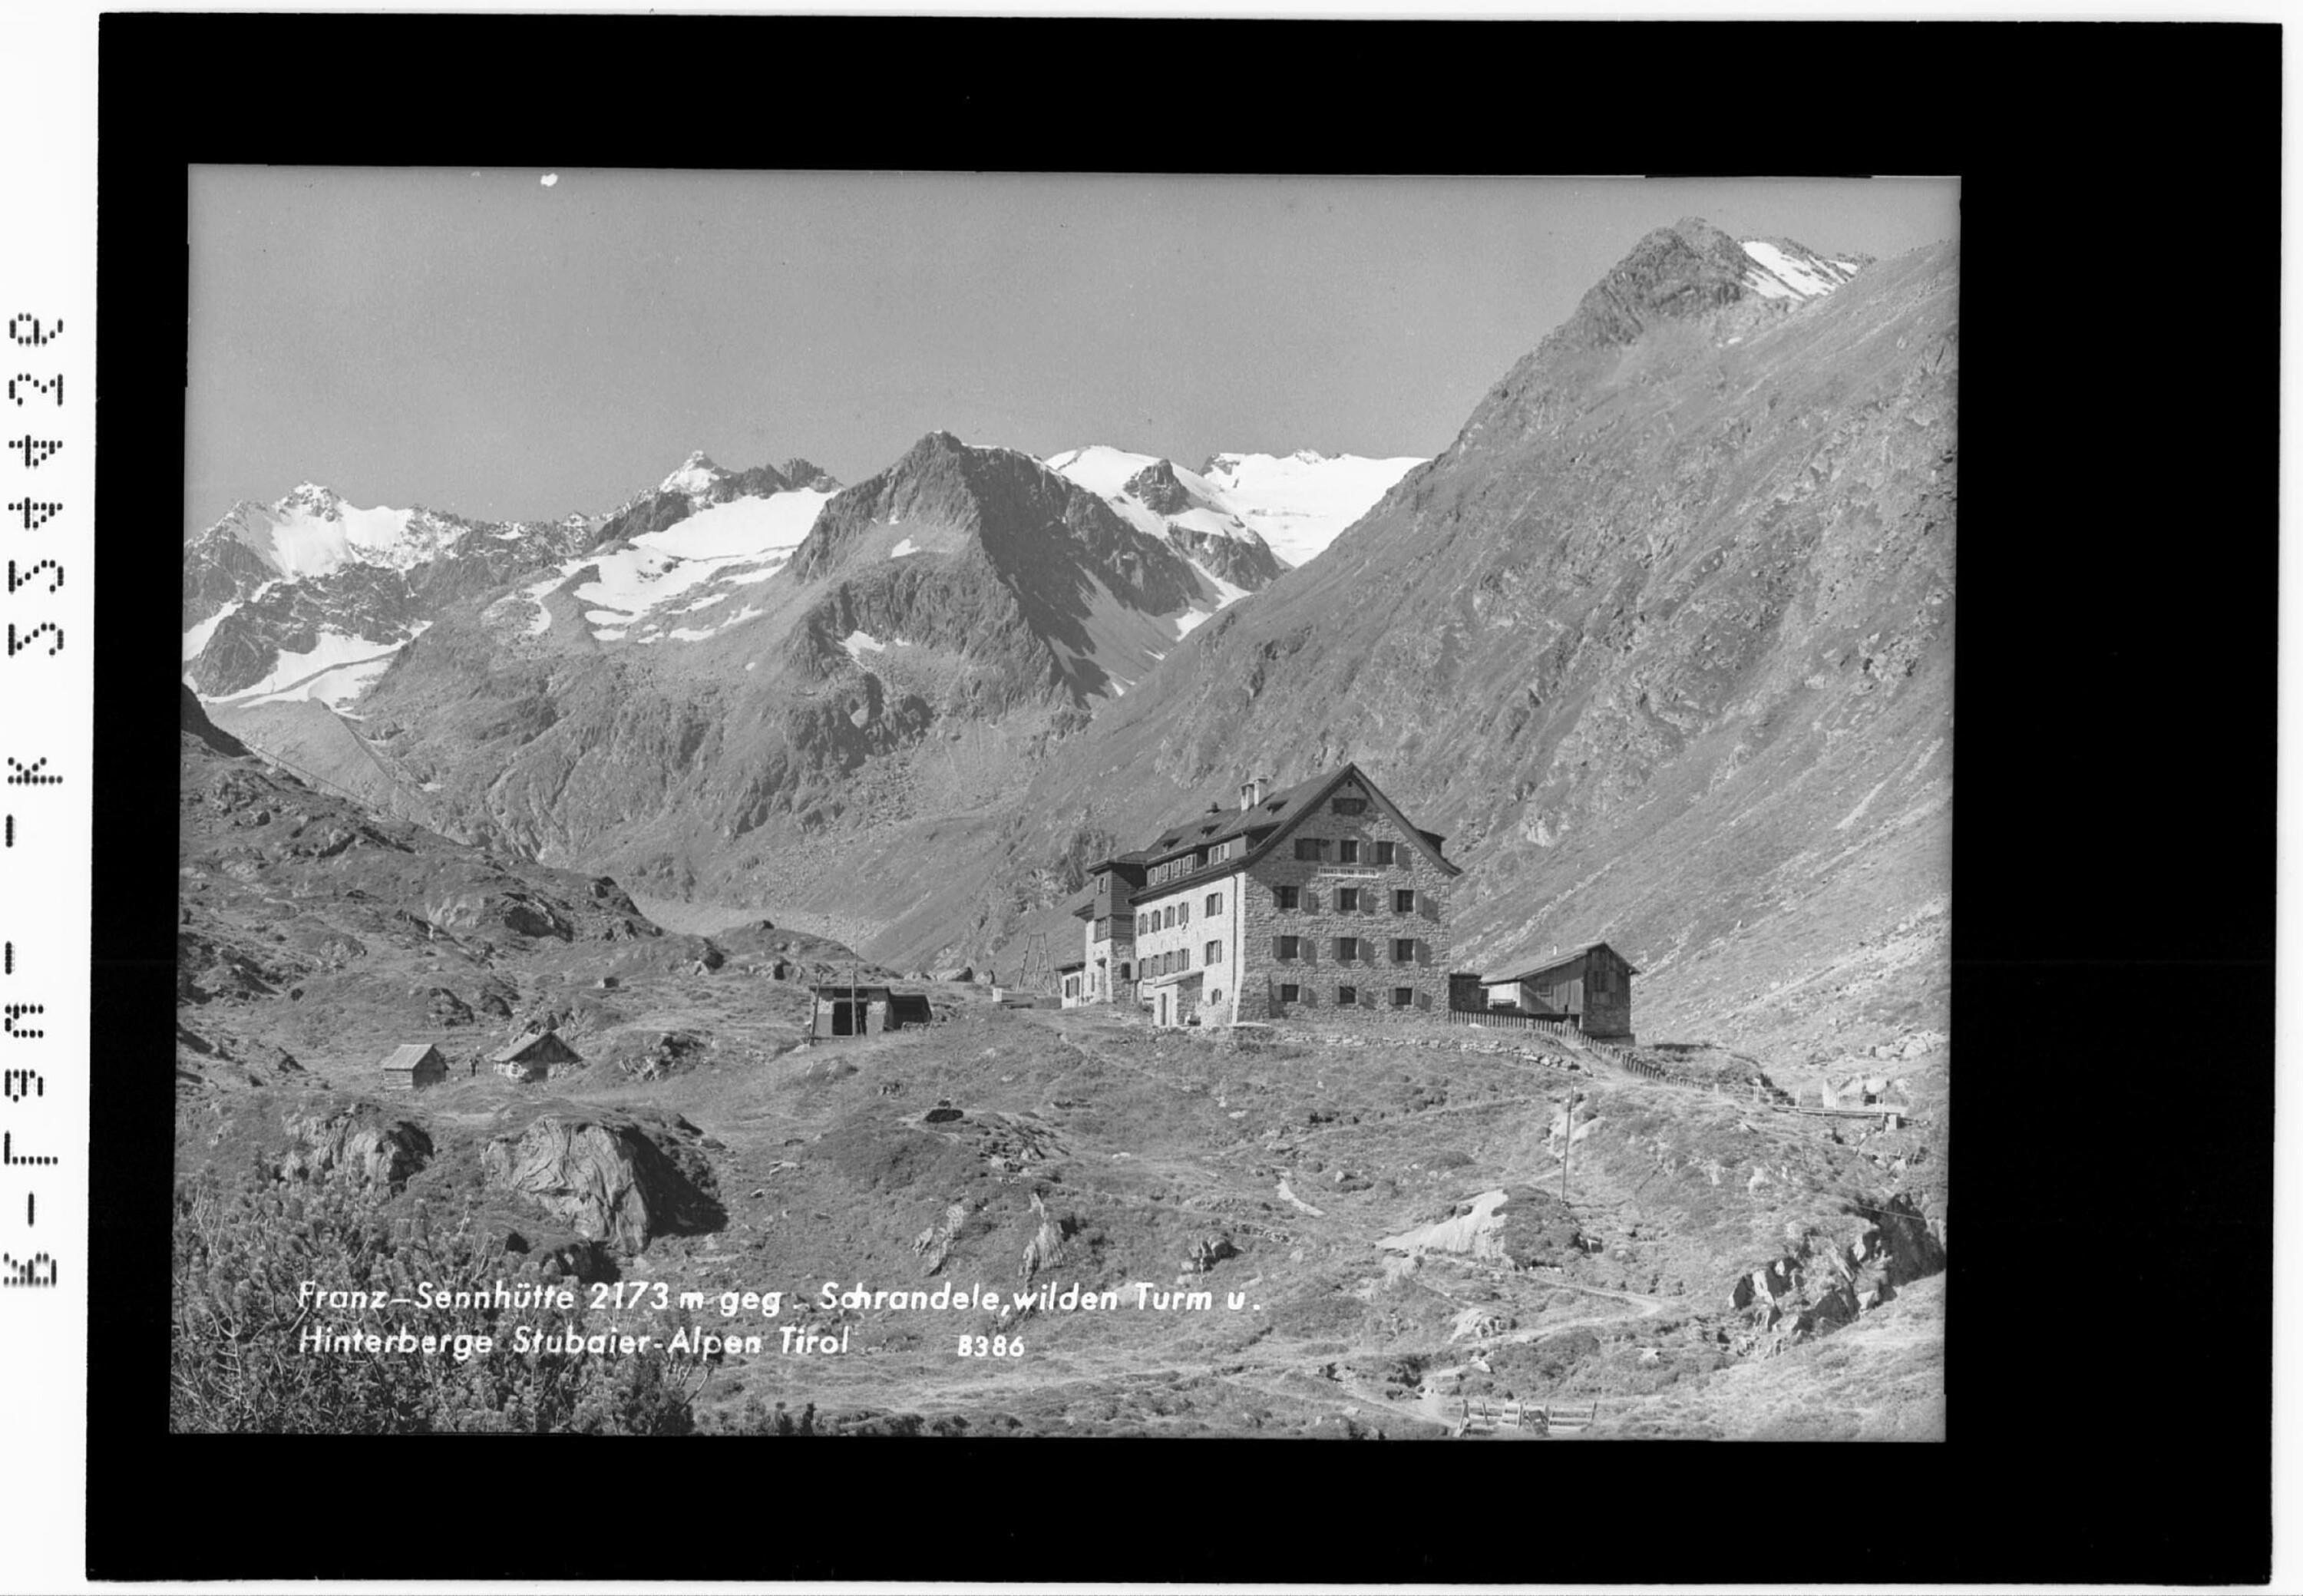 Franz Senn Hütte 2173 m gegen Schrandele - Wilden Turm und Hinterberge / Stubaier Alpen></div>


    <hr>
    <div class=